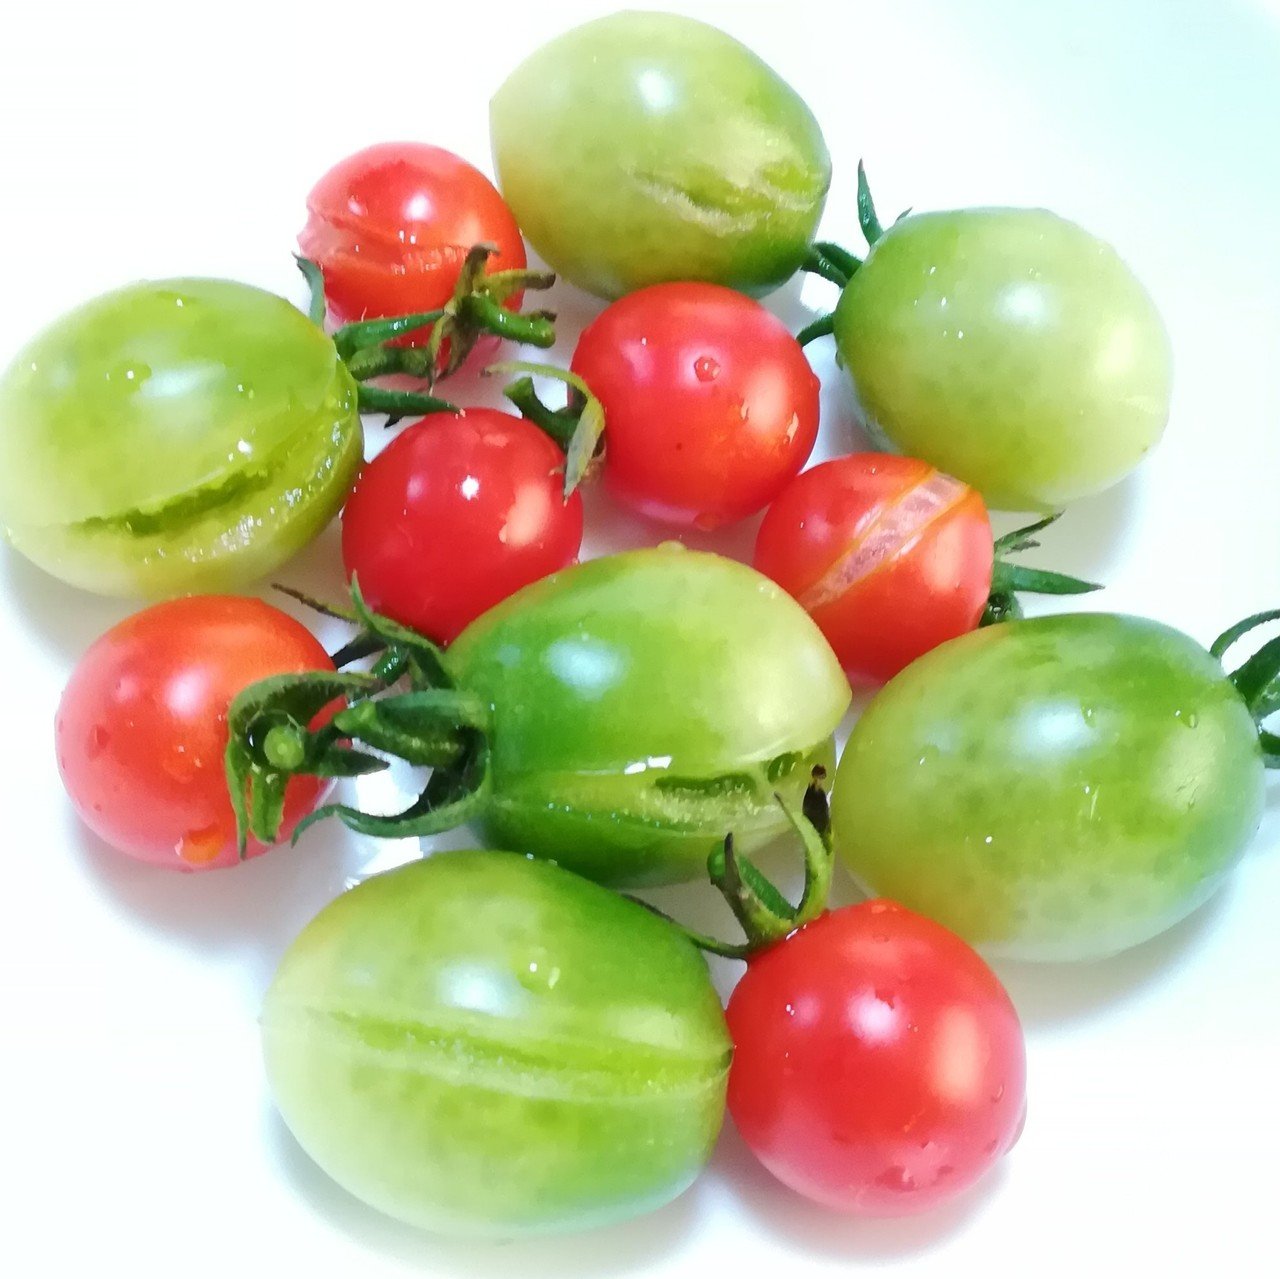 長雨で 植えていた大切なミニトマトがはぜてしまいました でも味は美味しいです 緑のトマトはサリーナエメラルドといって 緑色 で完熟するものです うわの空 Note